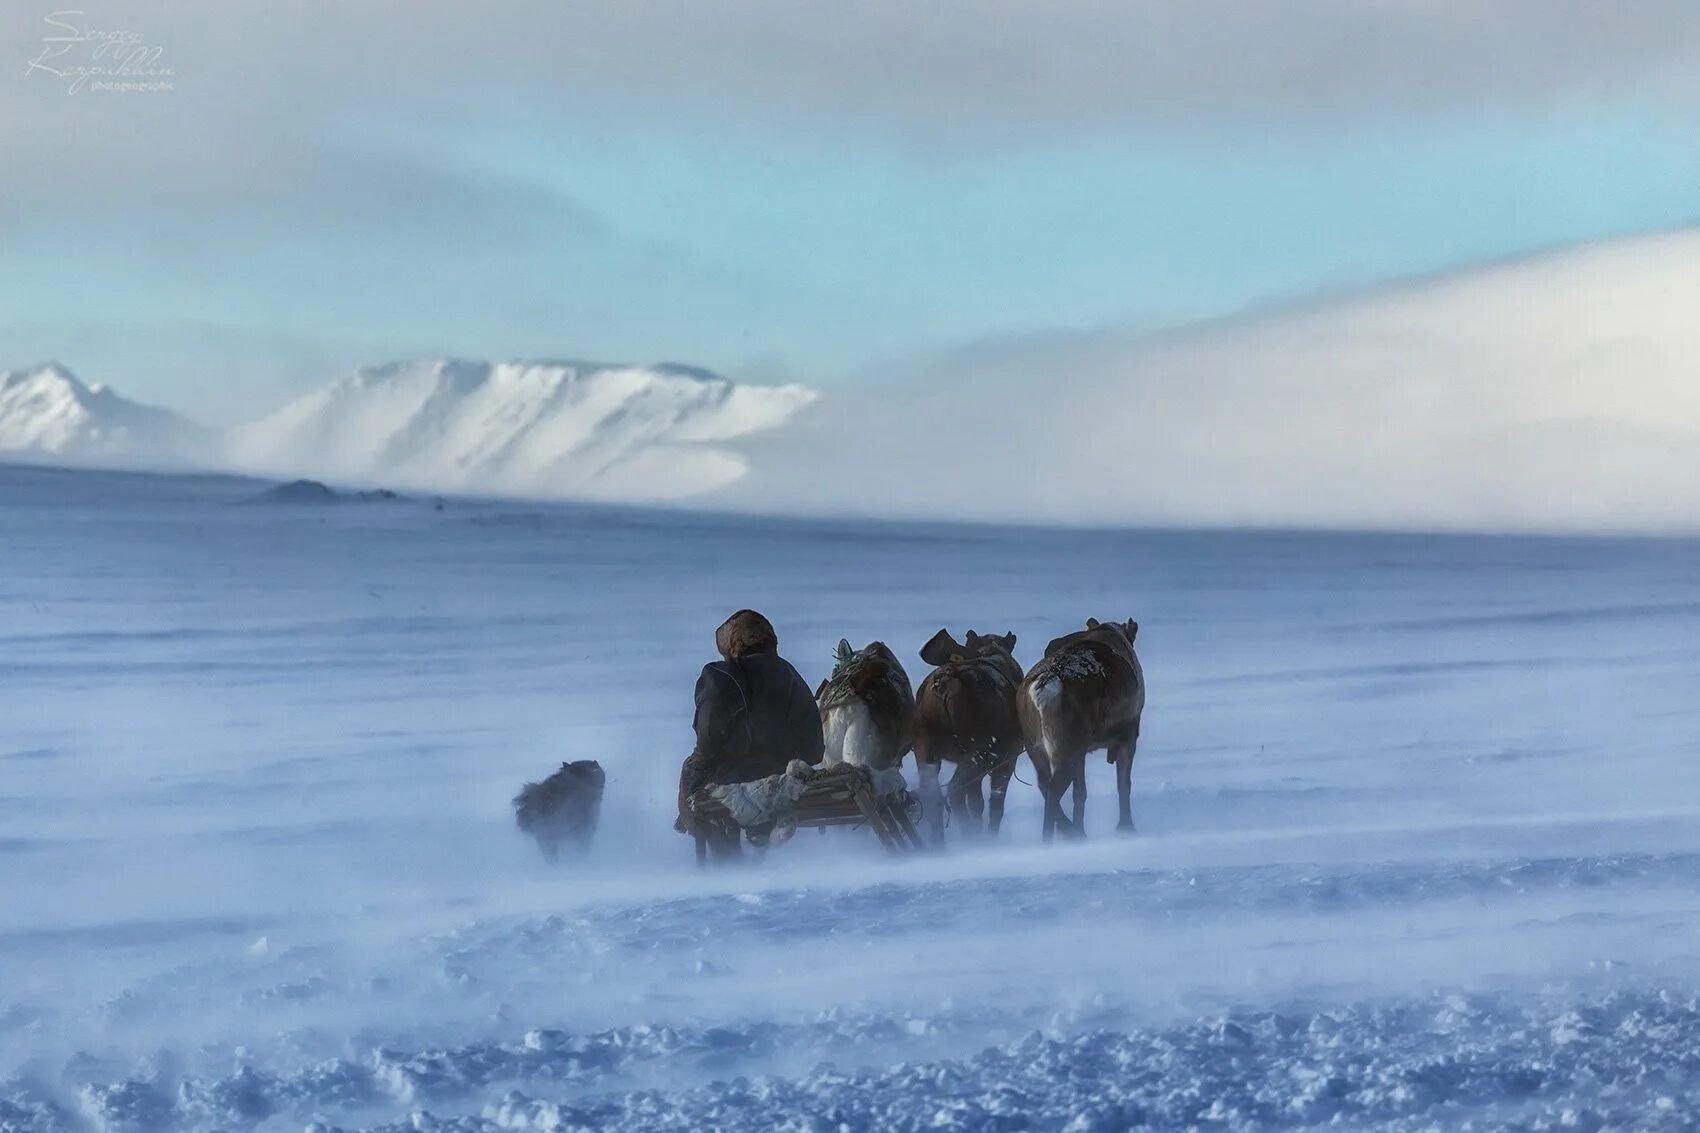 Исландия Северный Ледовитый океан. Арктика Россия. Полярный край. Жизнь в Арктике. Отчет от южных морей до полярного края